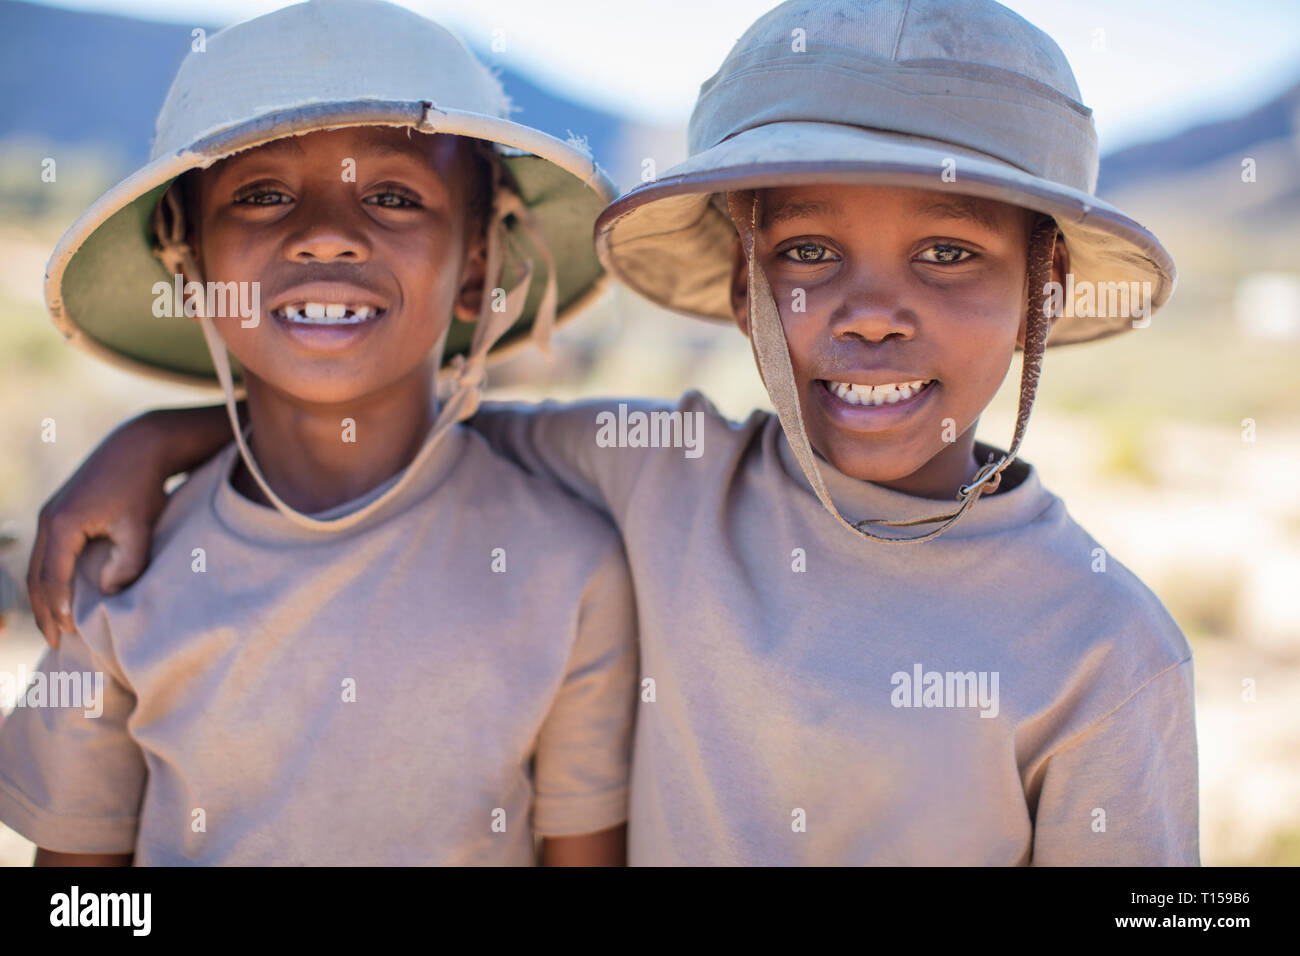 Portrait de deux garçons souriants qui englobe le port de casque colonial Banque D'Images